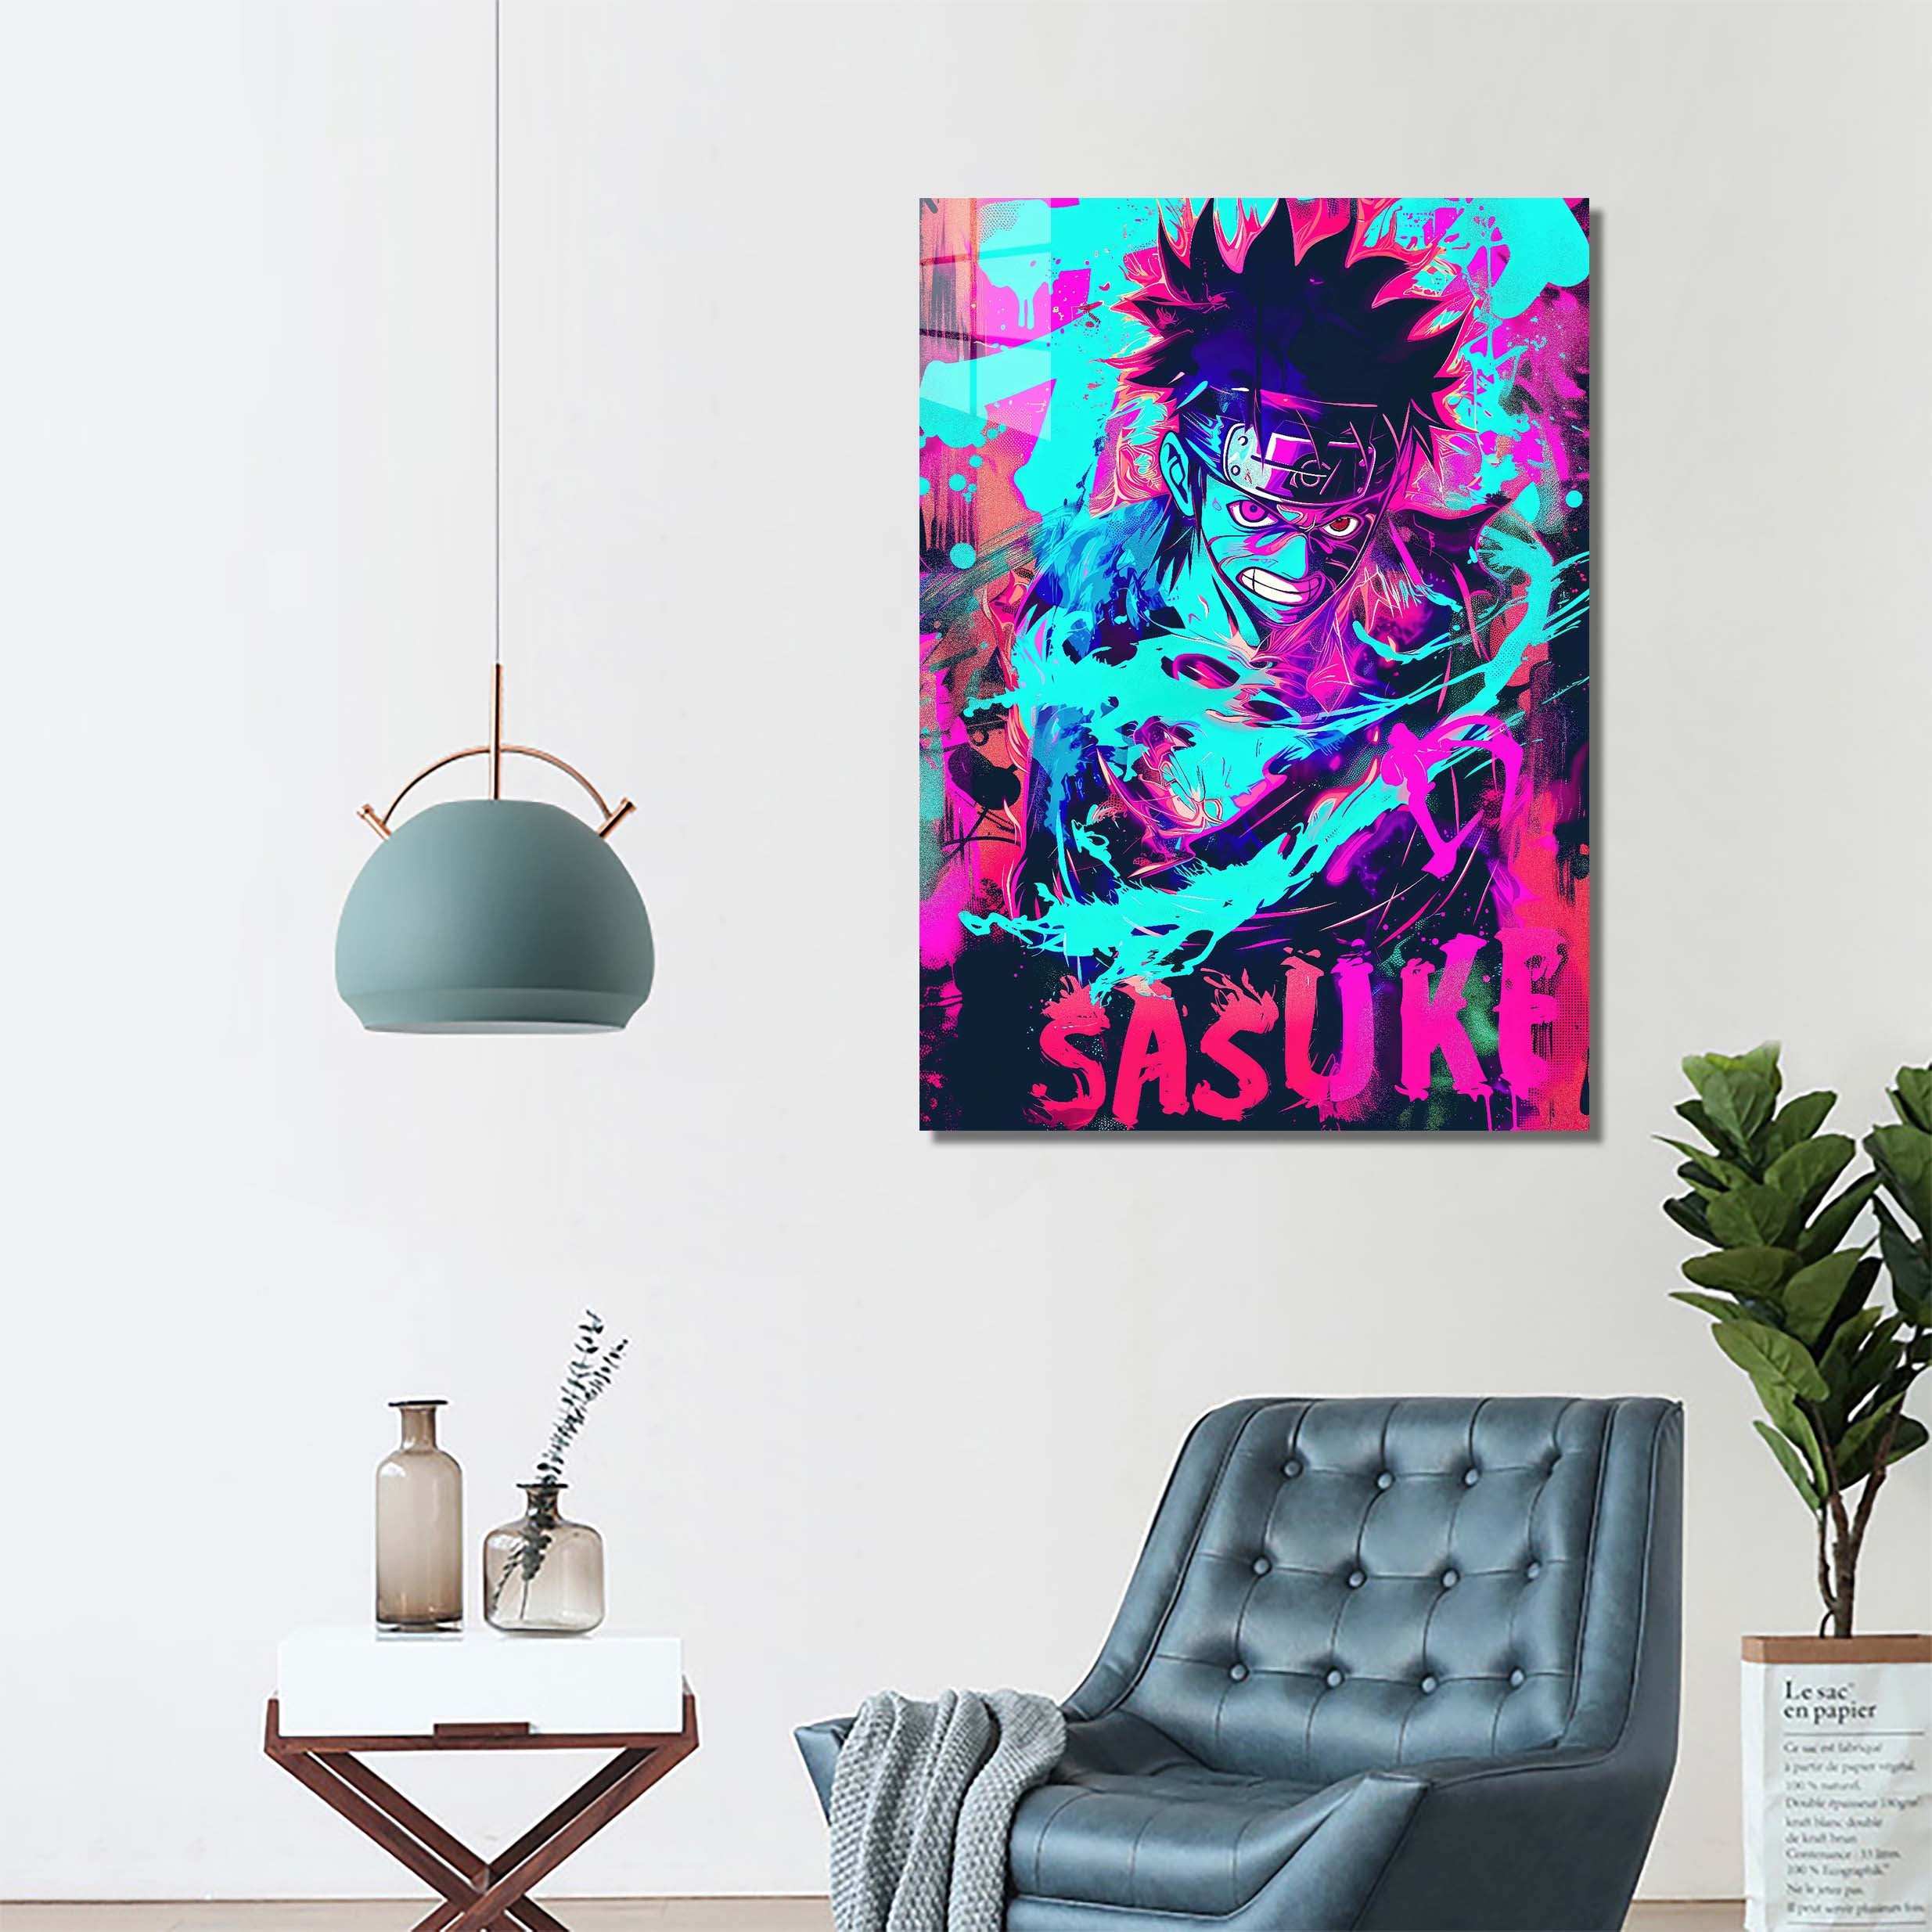 Plasma Sasuke 2-designed by @Silentheal